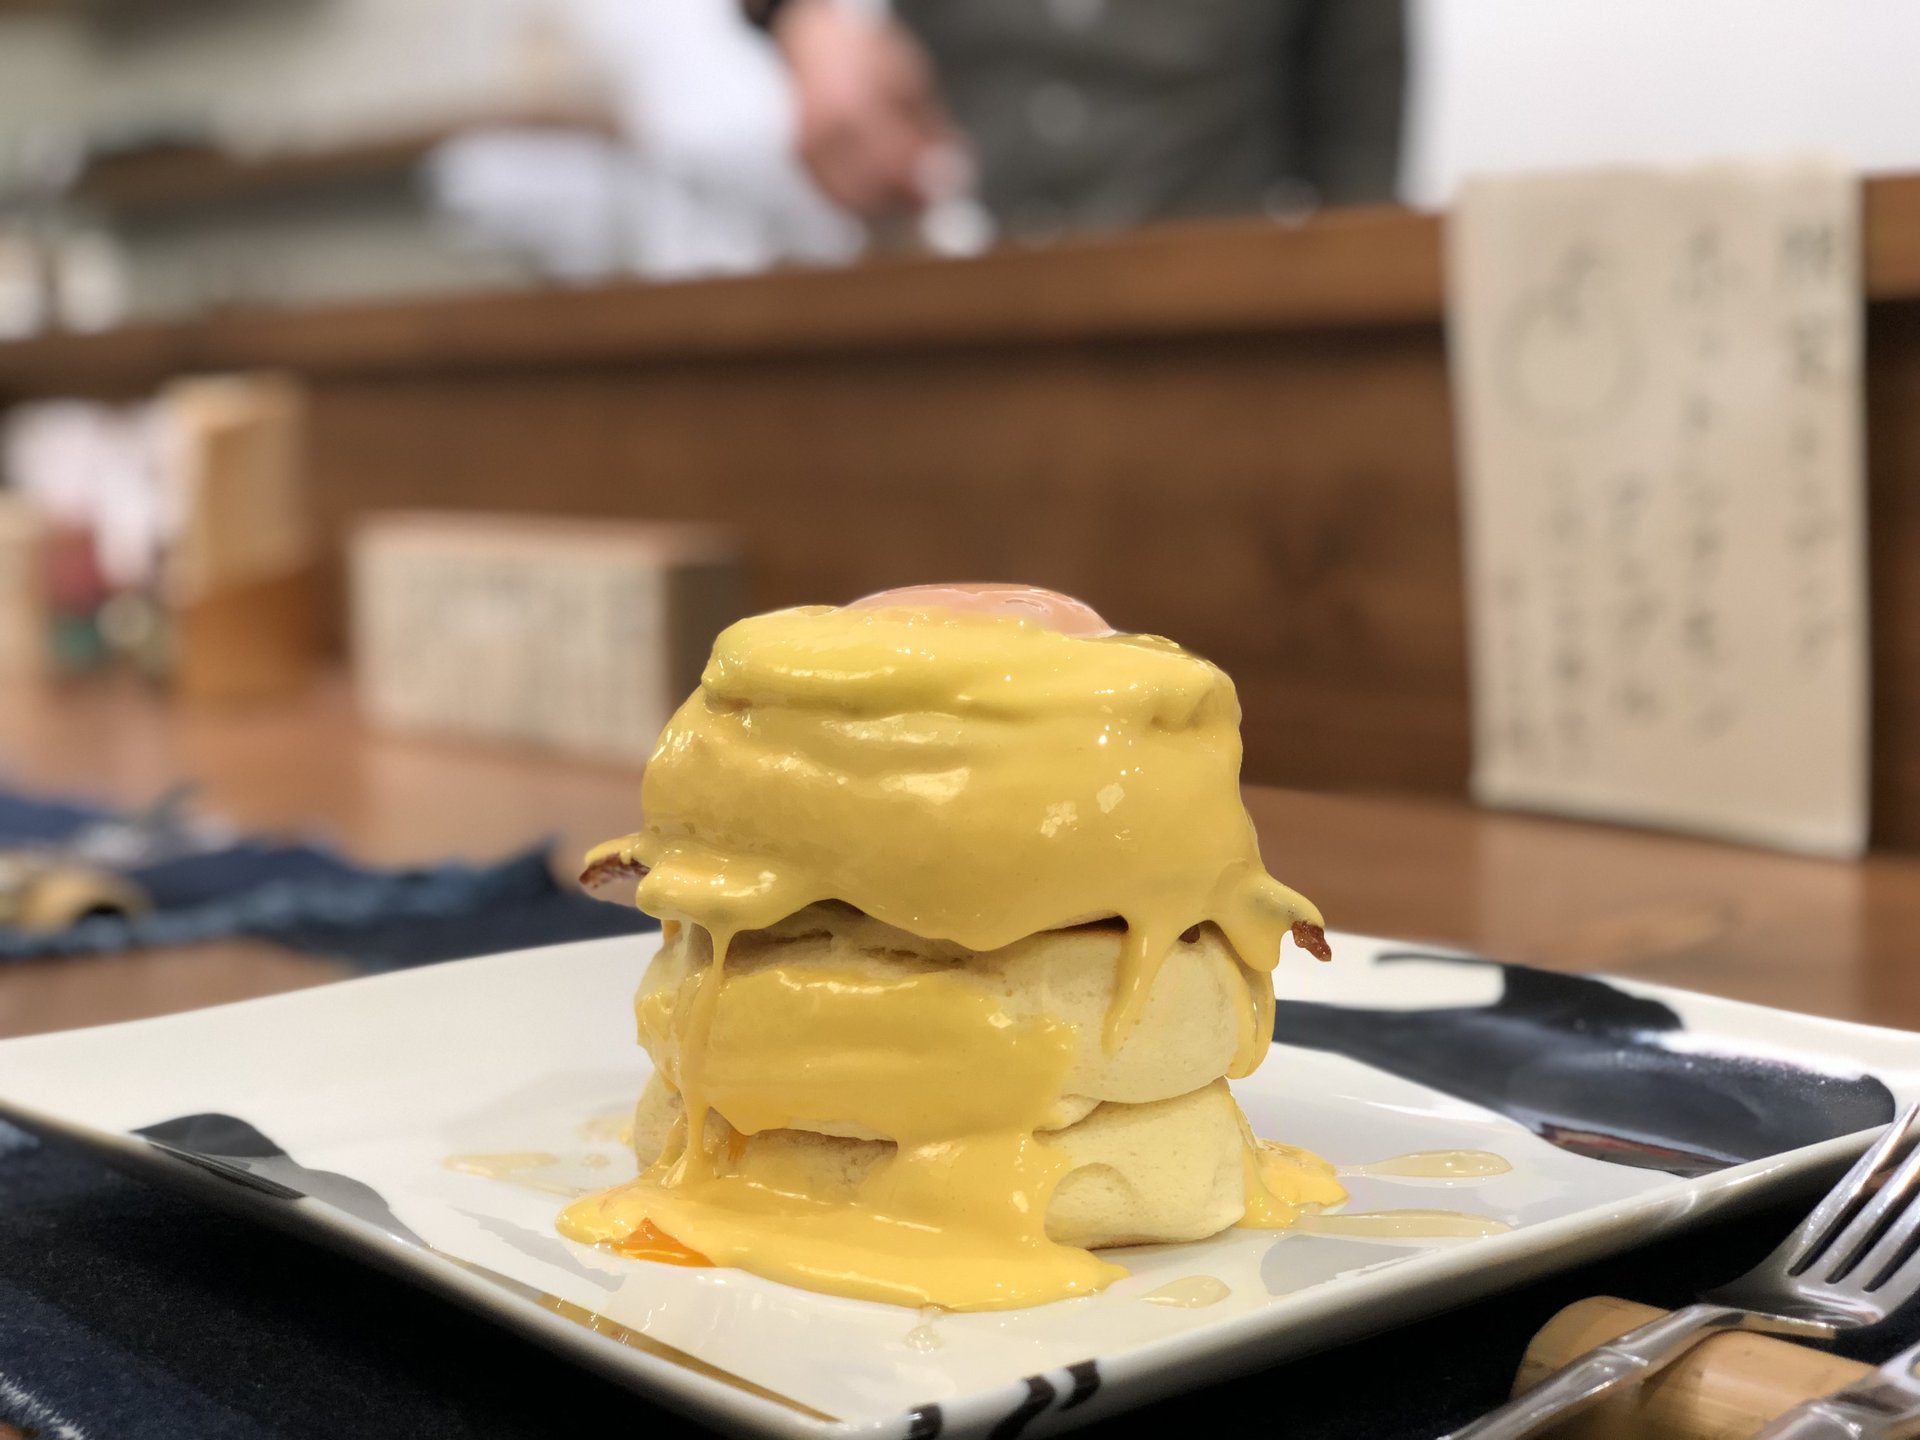 浅草「紅鶴」食事系パンケーキ‼︎完全予約制でレア感のあるカフェへ♡